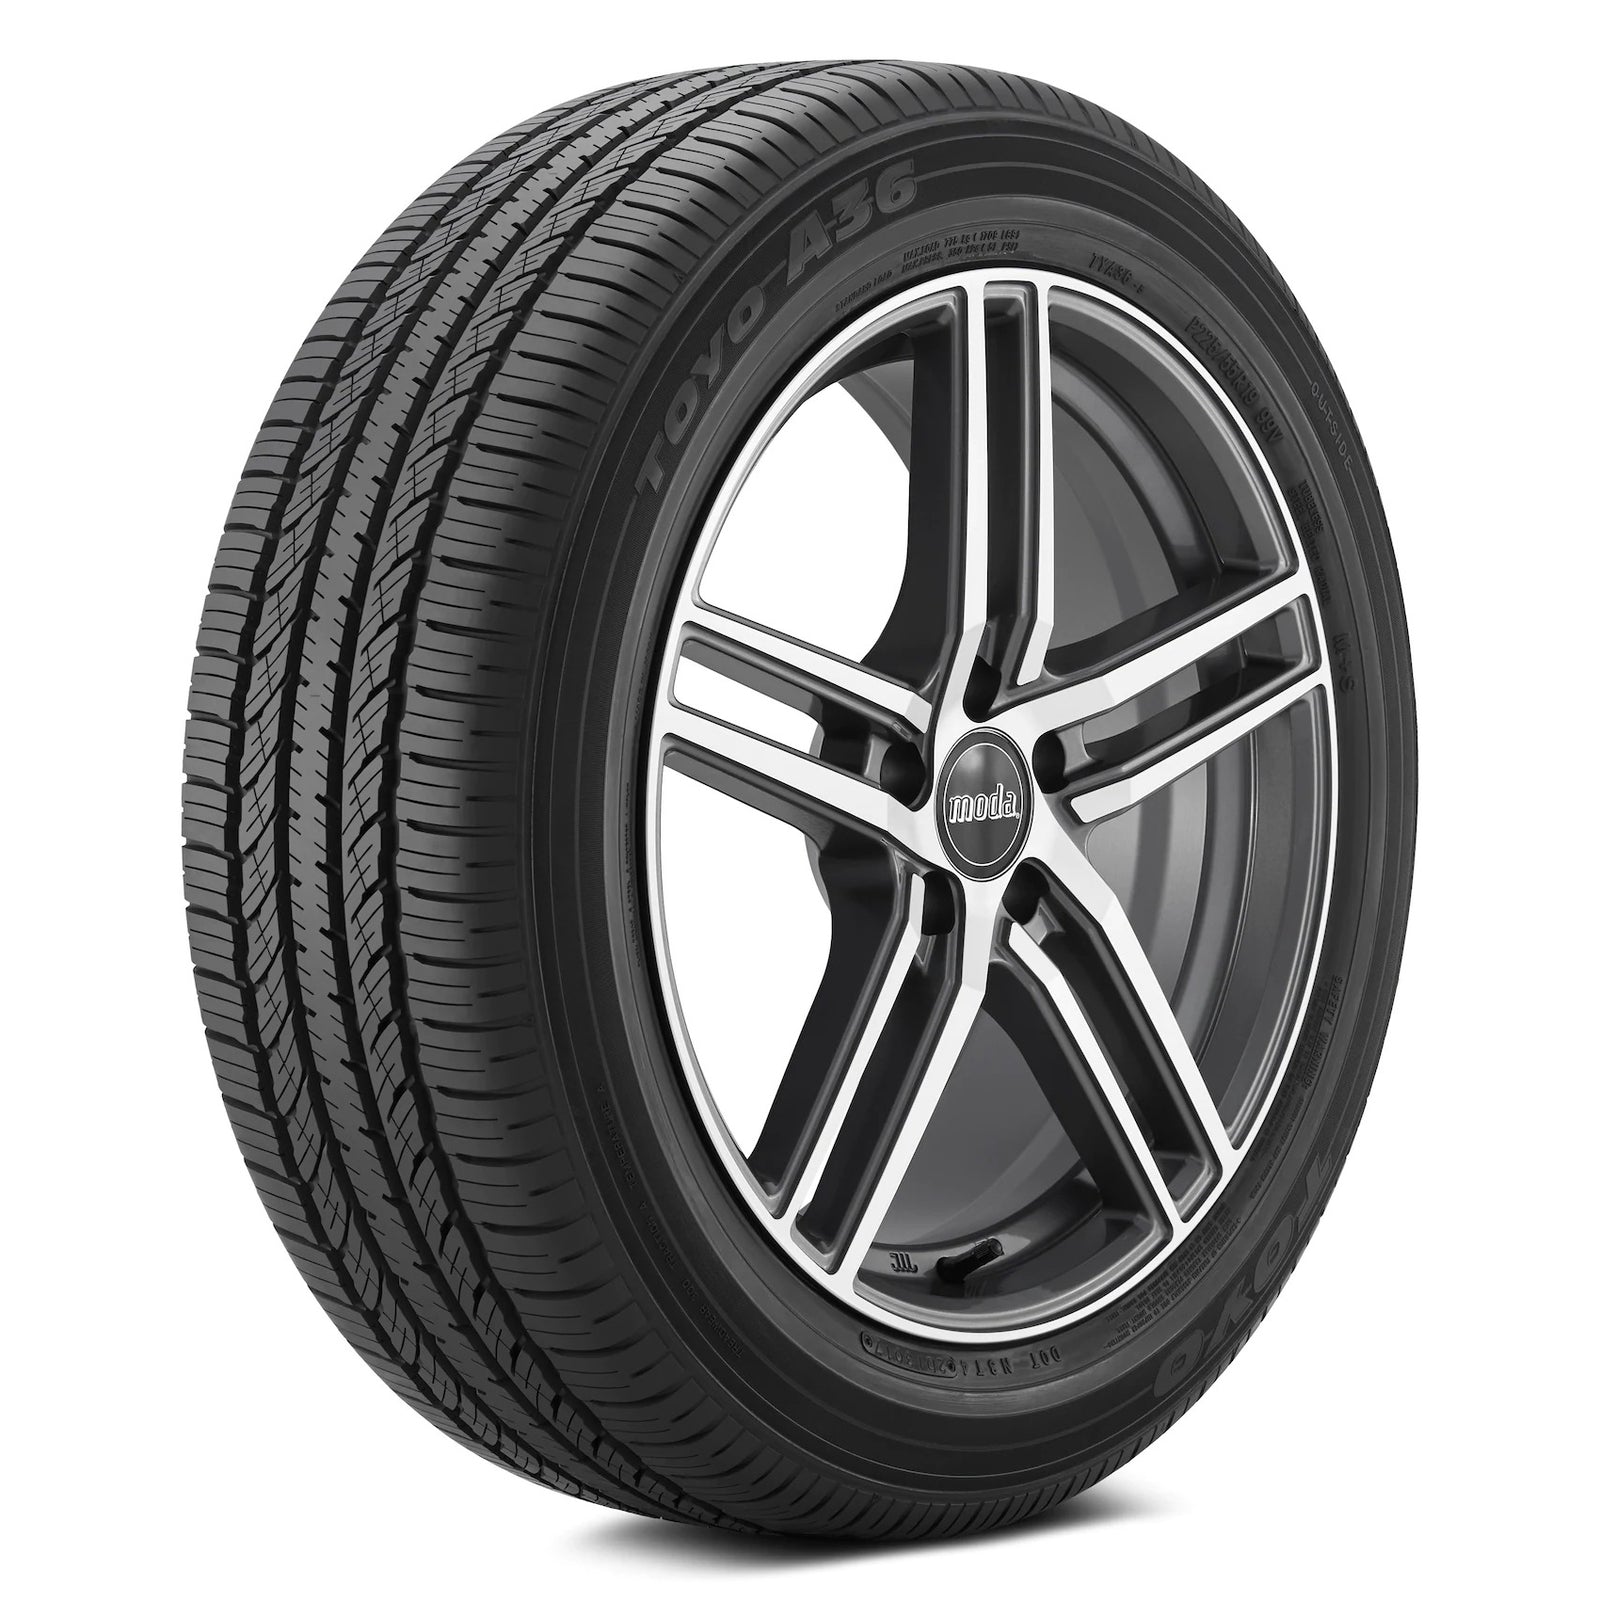 Toyo A36 | All-Season Tire - Mazda Shop | Genuine Mazda Parts and 